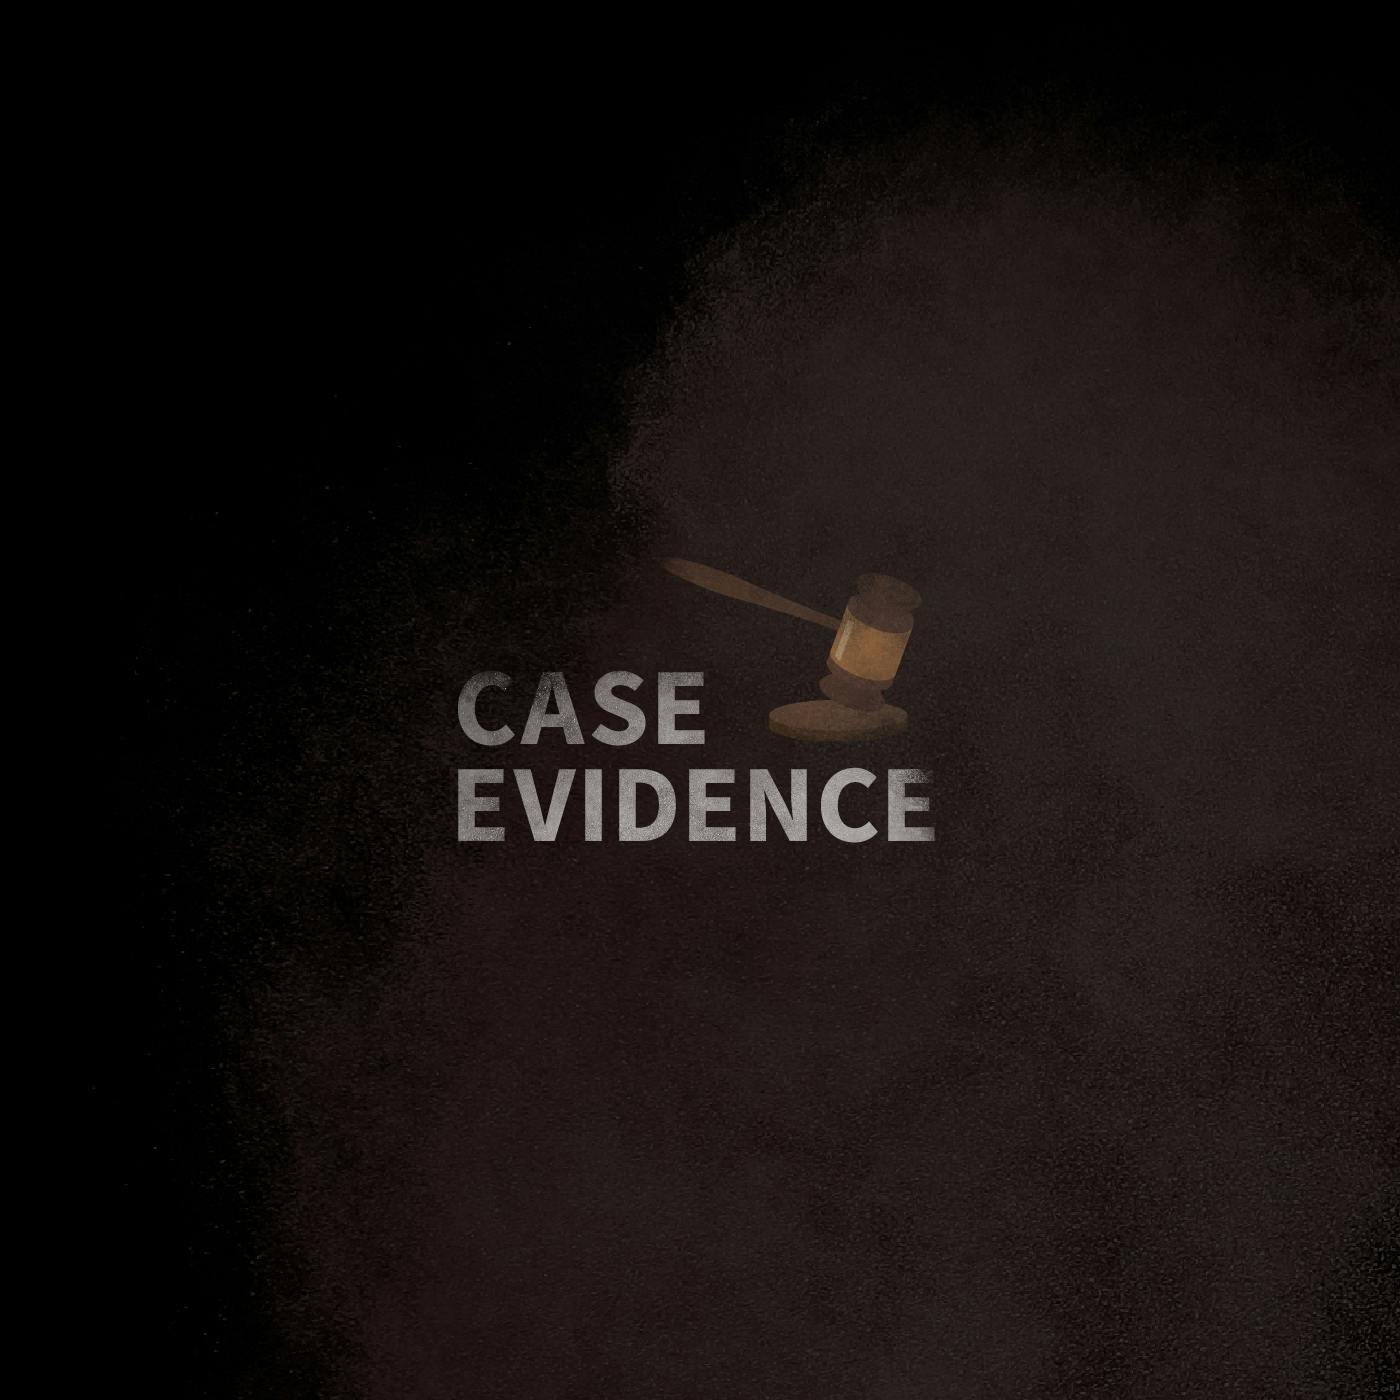 Case Evidence 12.12.16